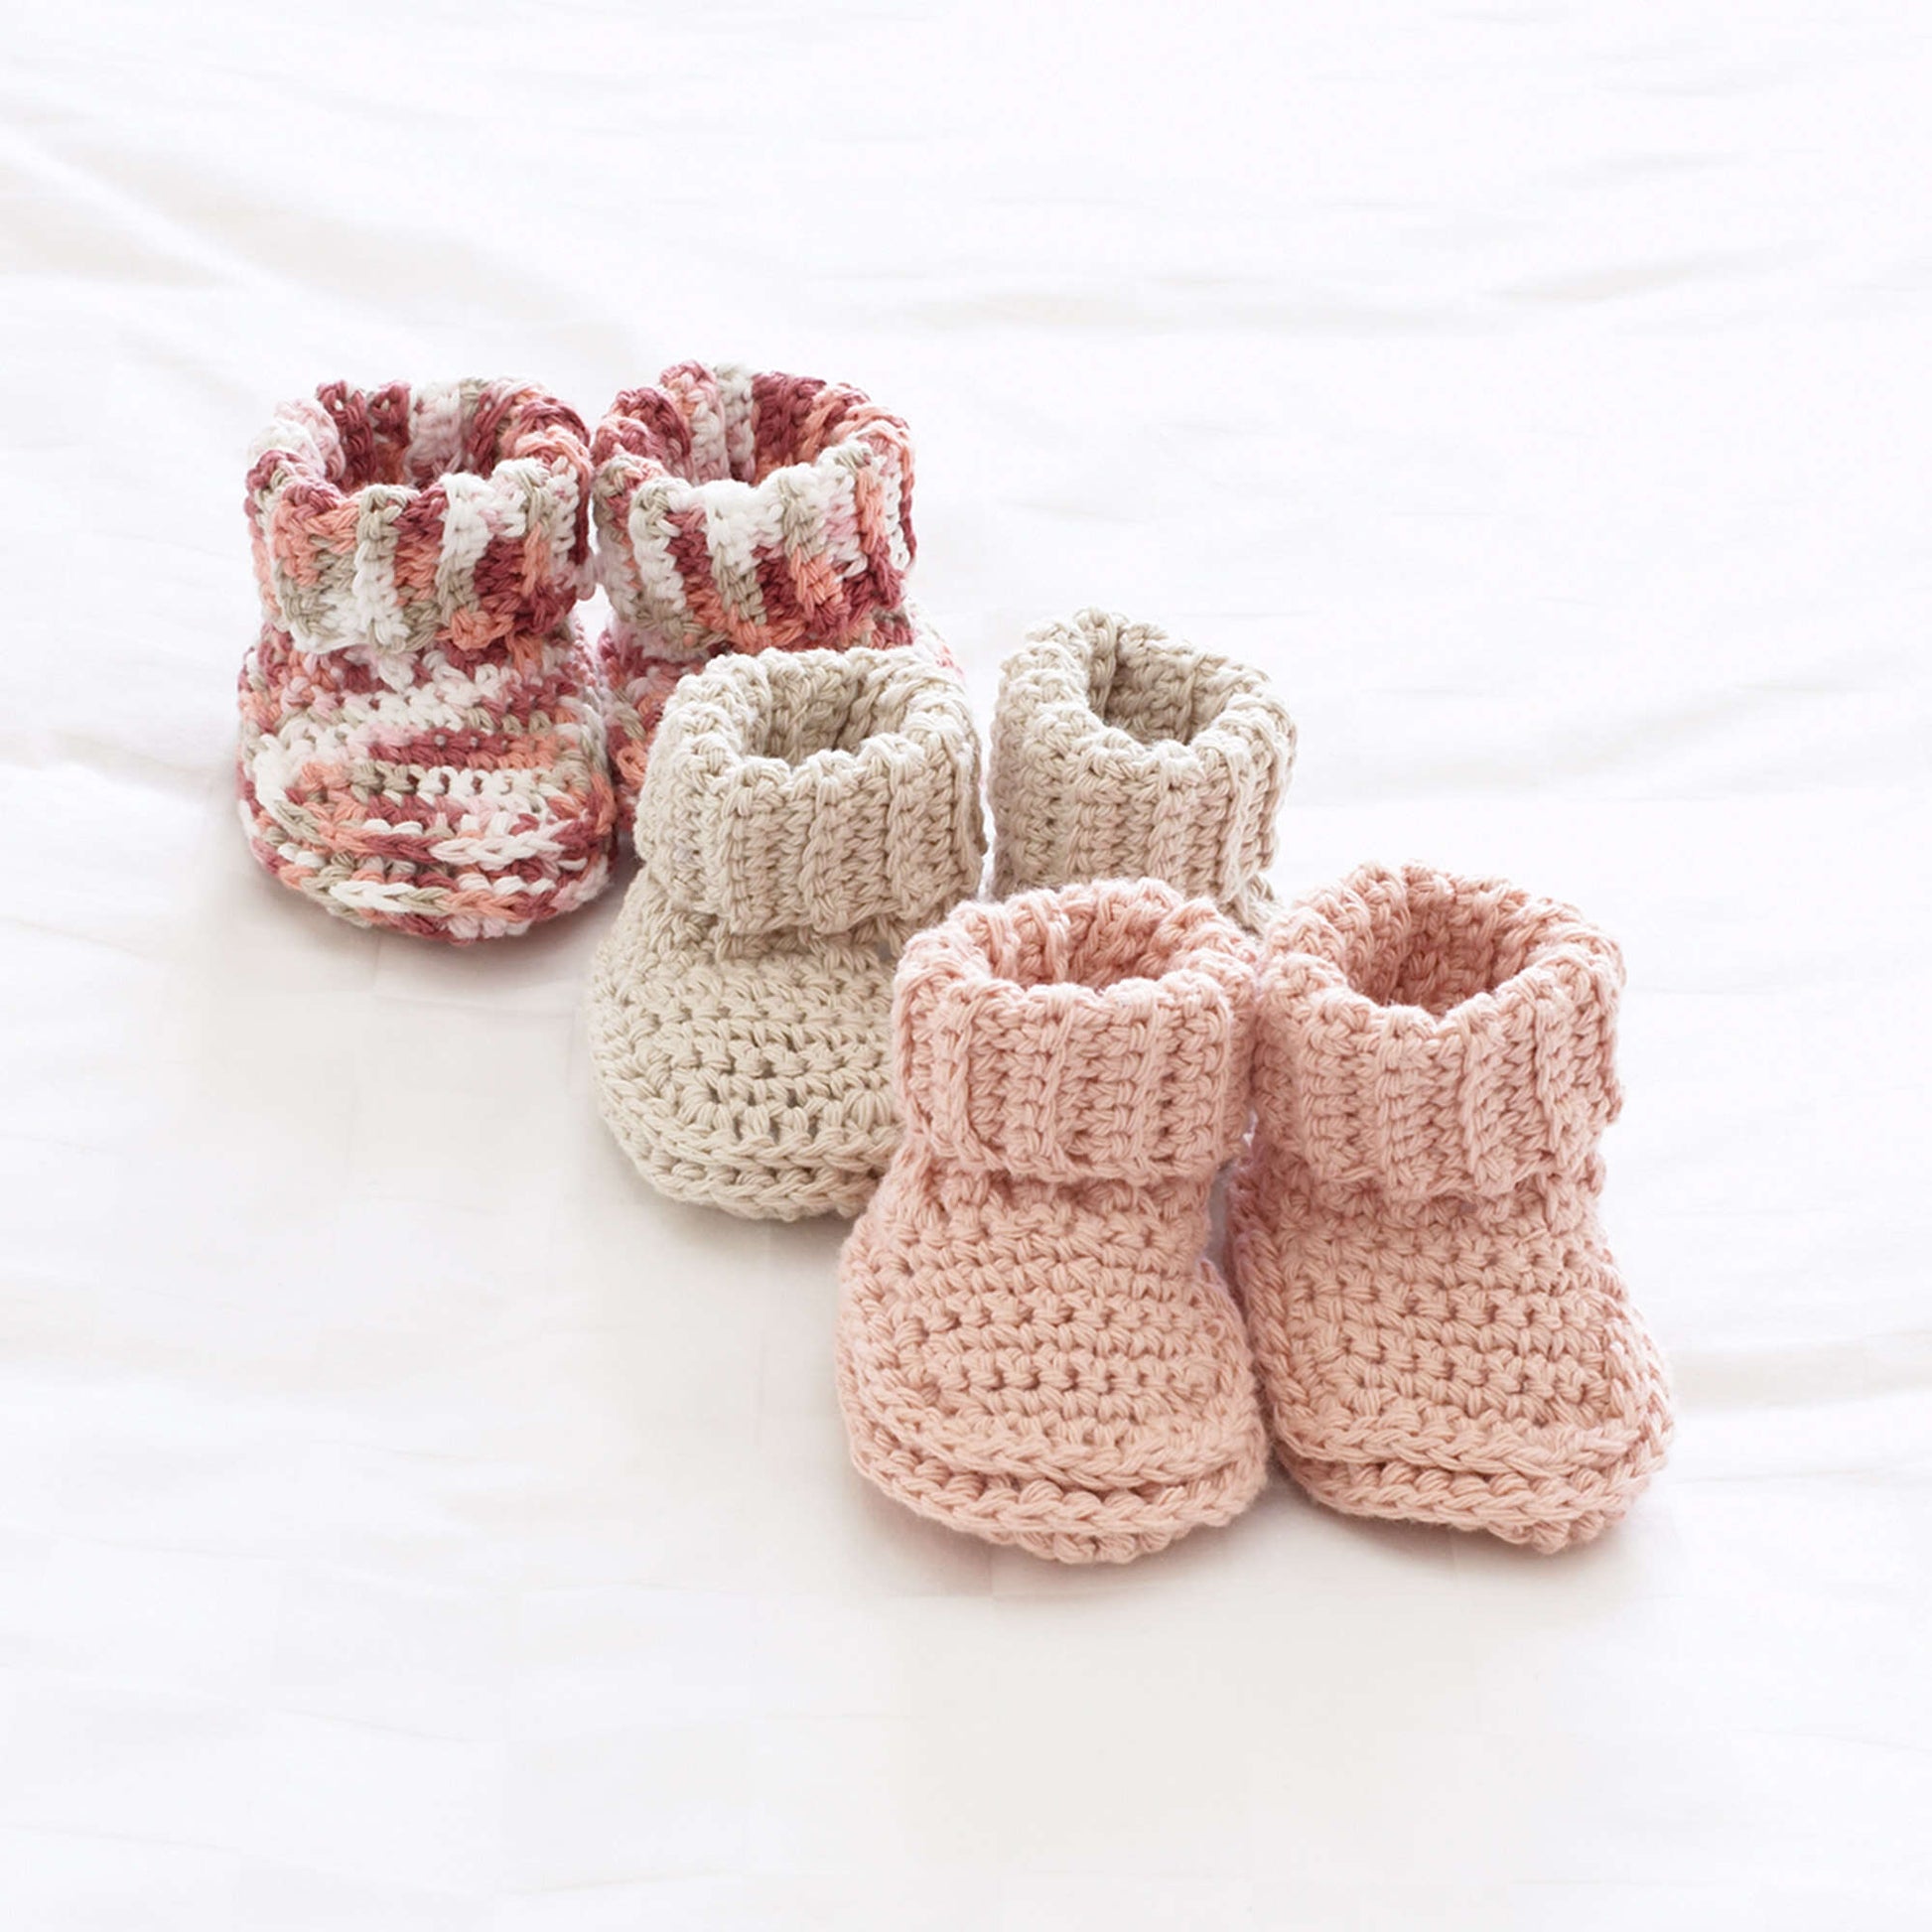 Bernat Peachy Baby's Booties Crochet Bootie made in Bernat Handicrafter Cotton yarn